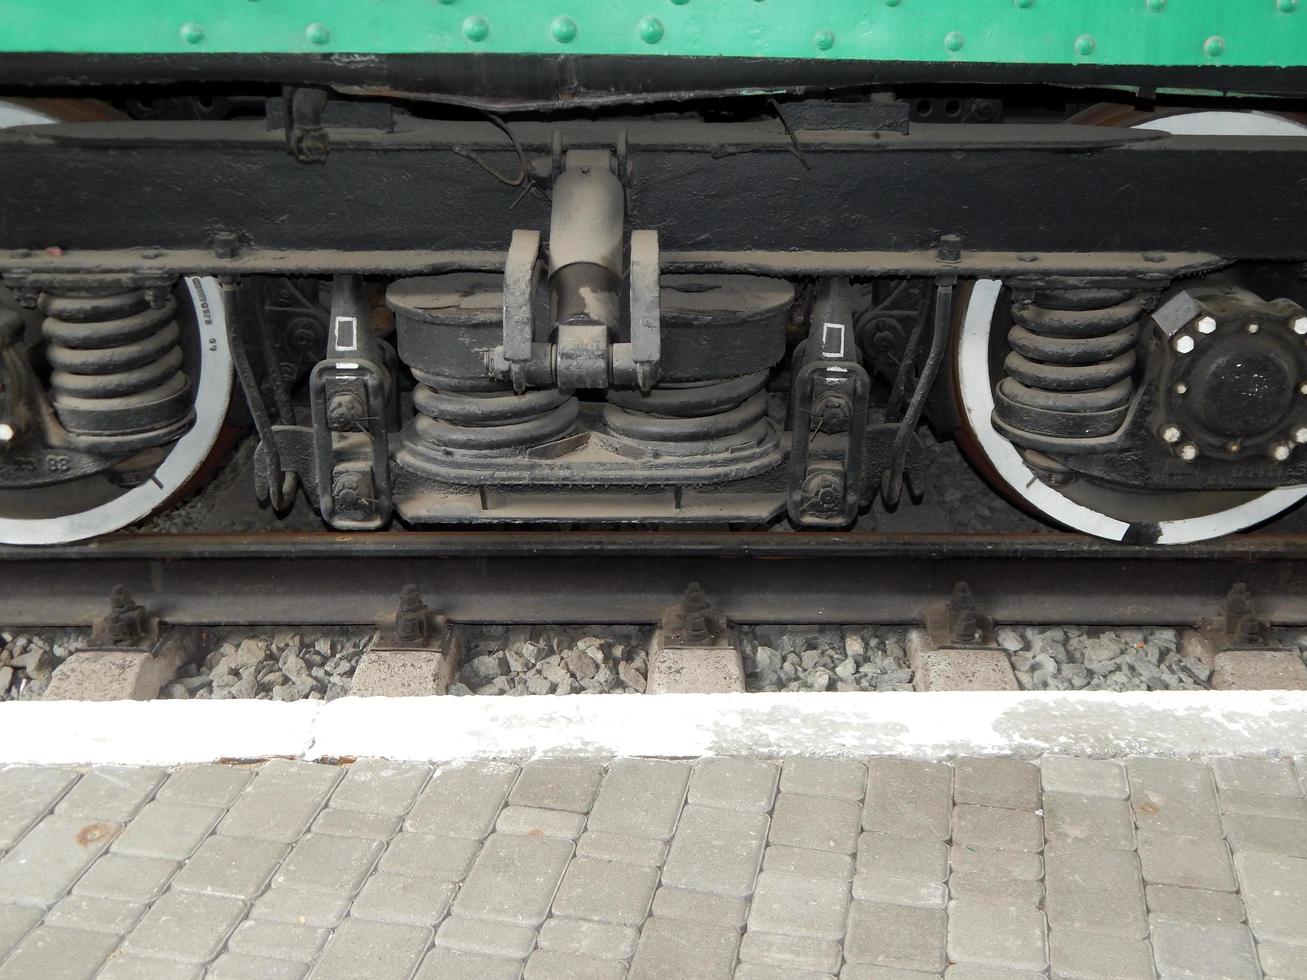 detalhes de transporte ferroviário da locomotiva, vagão foto